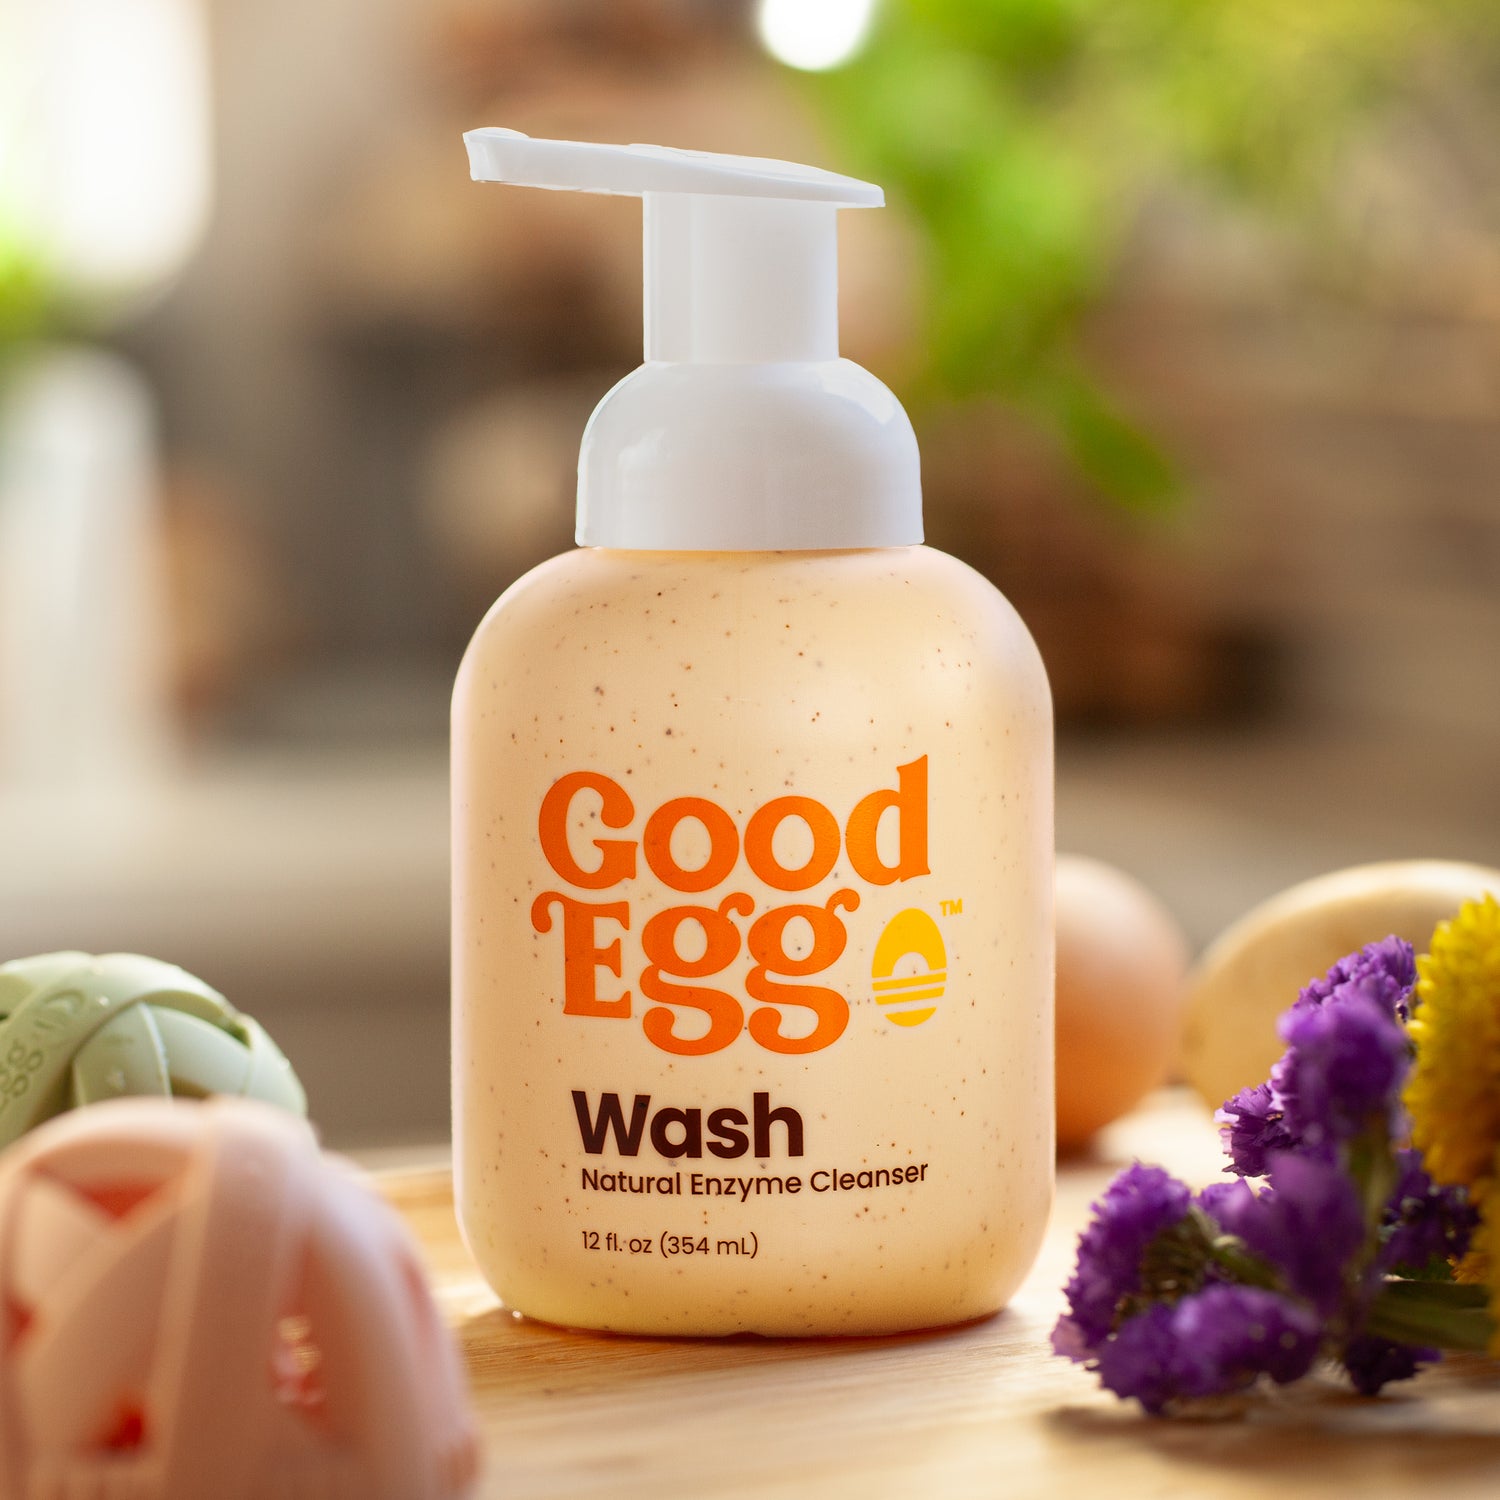 GoodEggStuff  The Original Egg Brush and Egg Cleaner to Clean Fresh E